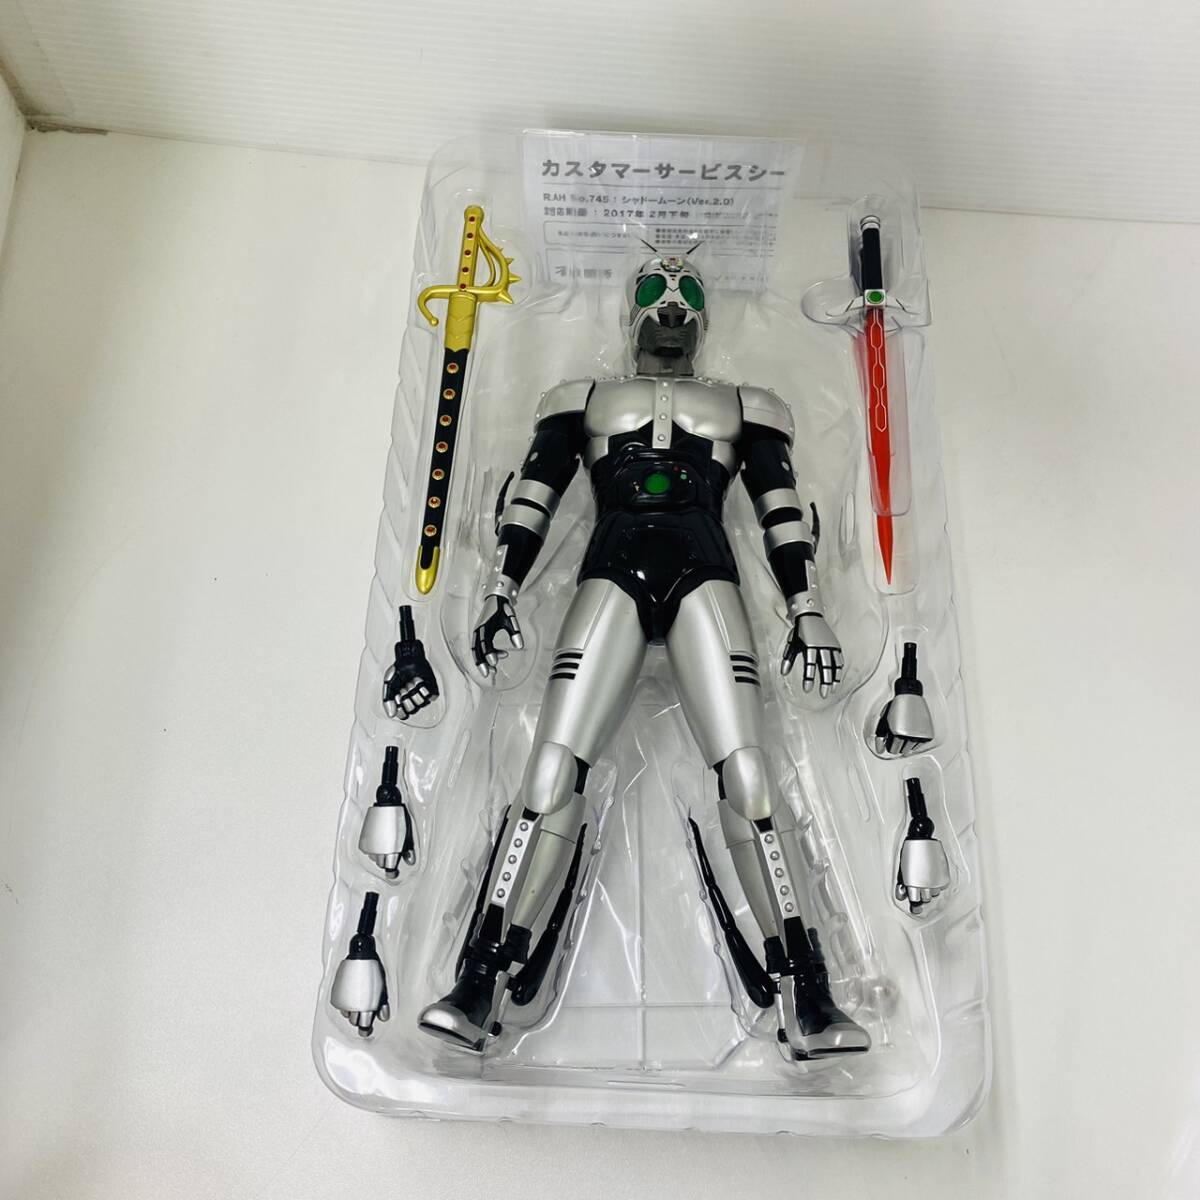 16220/ Kamen Rider BLACK RX тень moon (ver.2.0) Deluxe модель 2016 вне с коробкой спецэффекты фигурка Kamen Rider meti com игрушка 